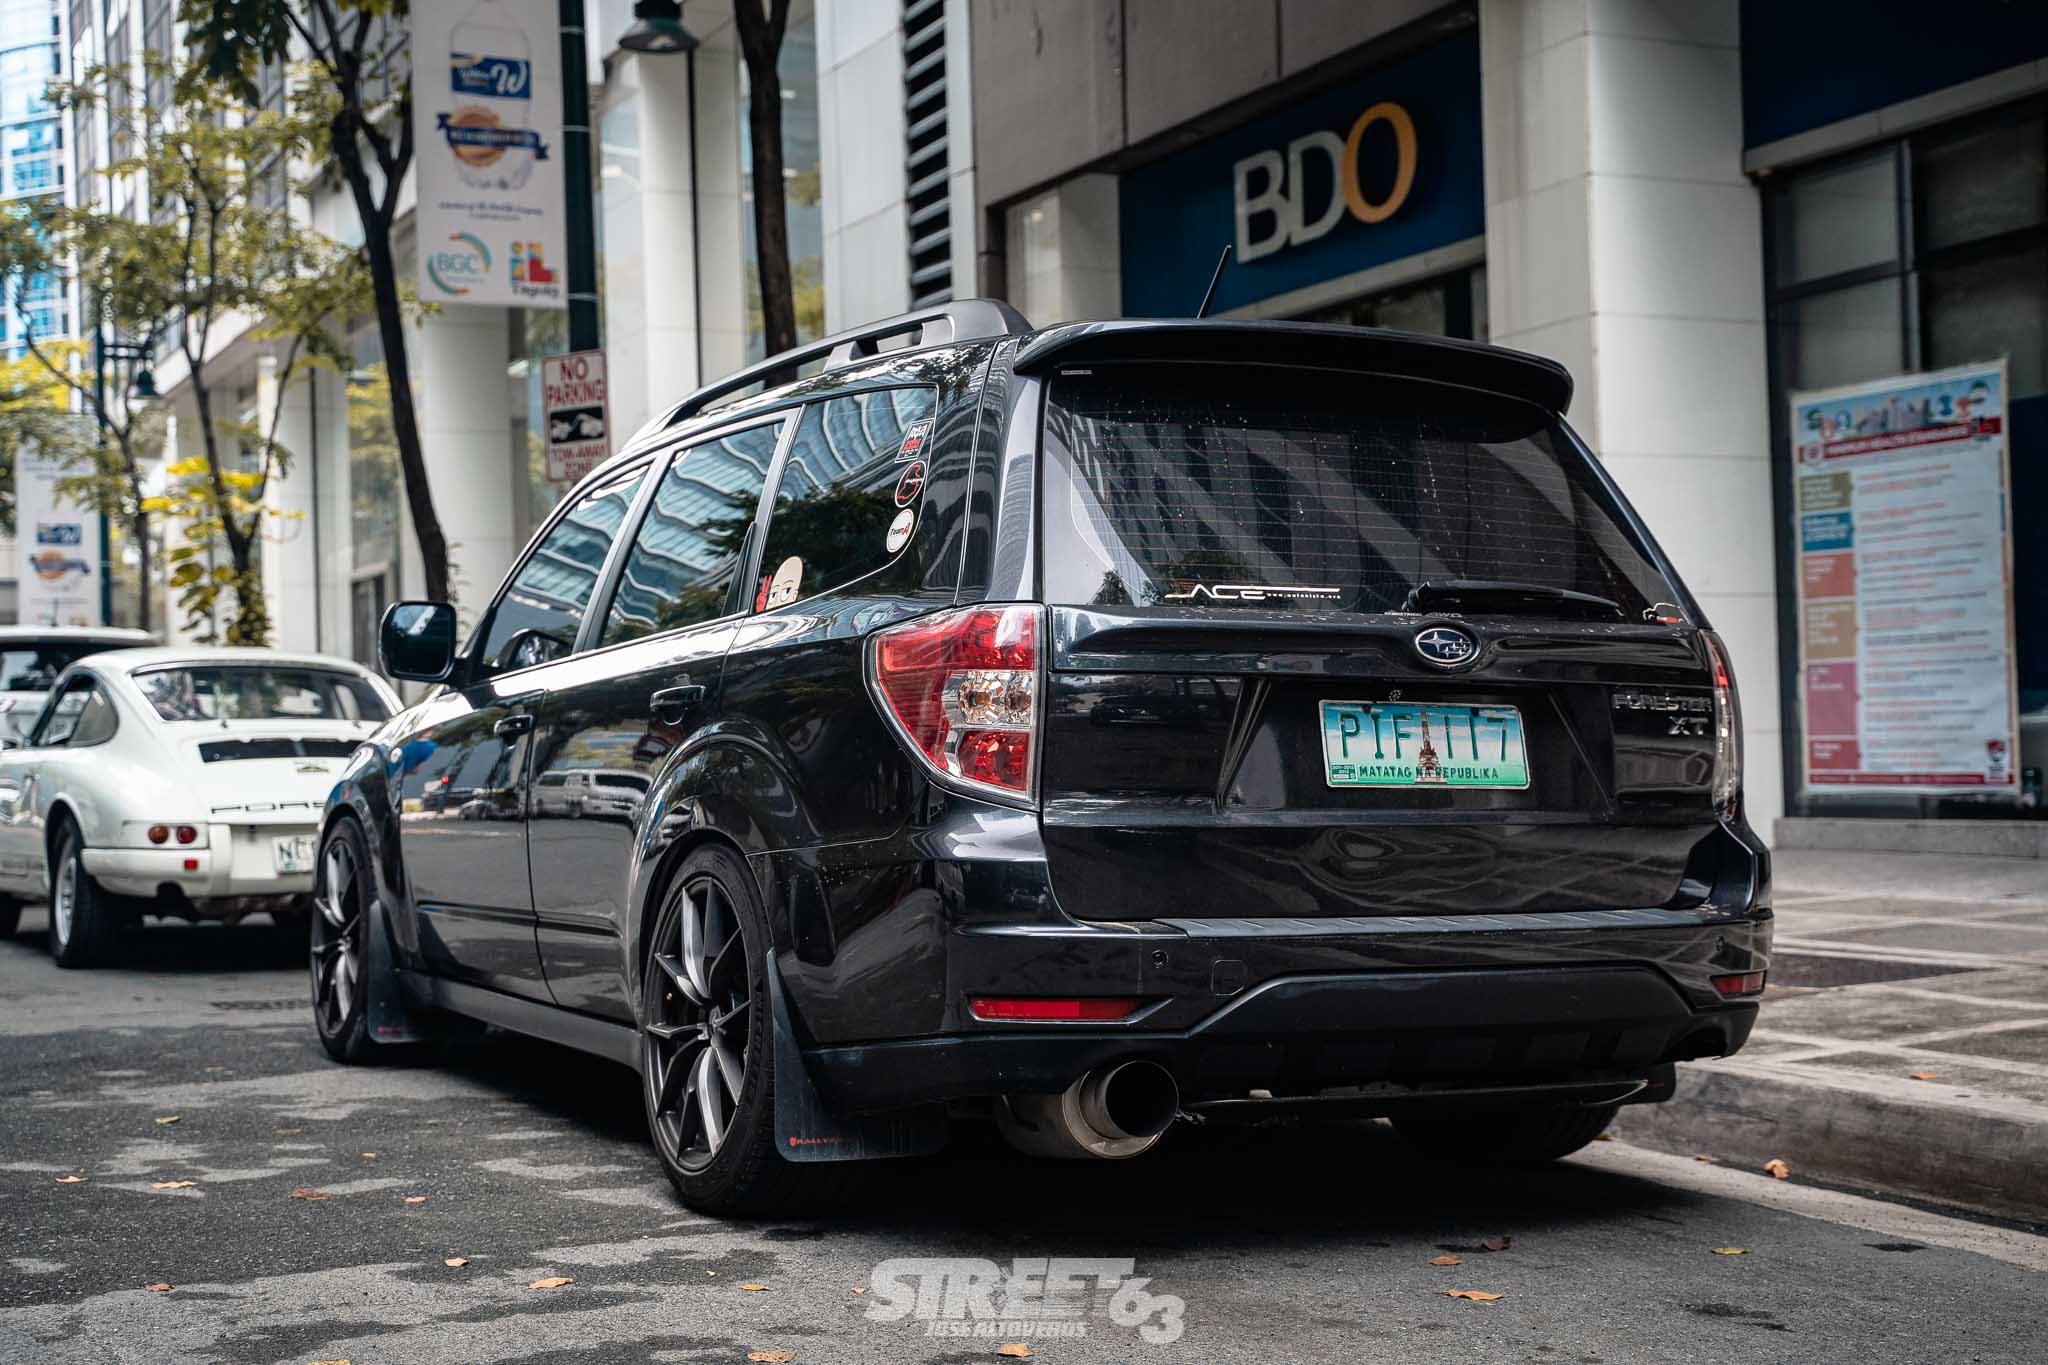 Subaru 3